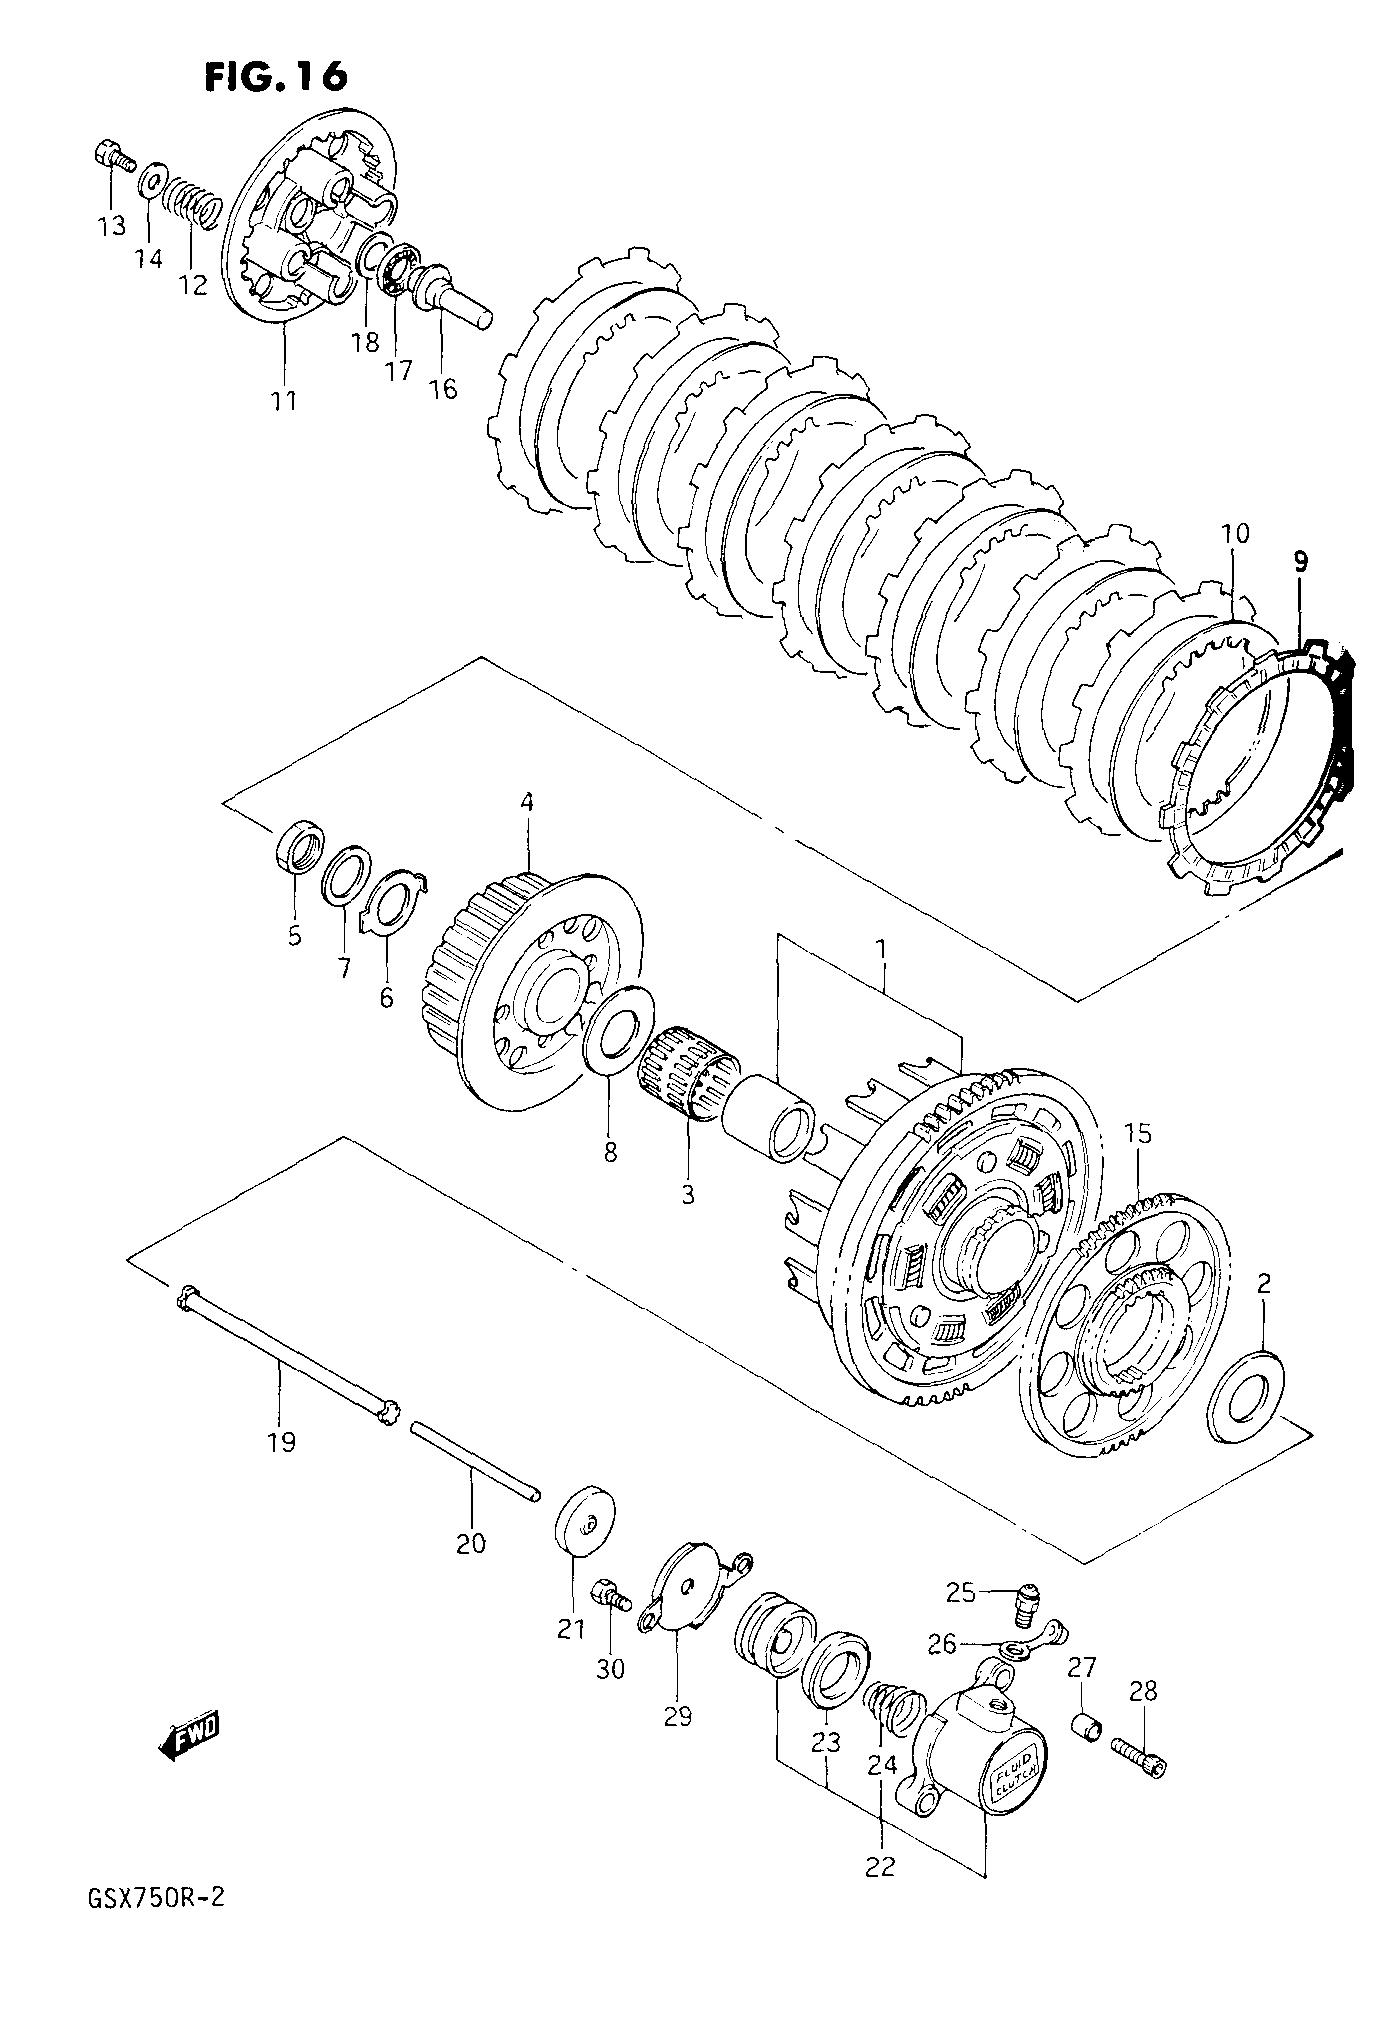 Wiring Diagram PDF: 2002 Suzuki Gsxr 1000 Wiring Diagram